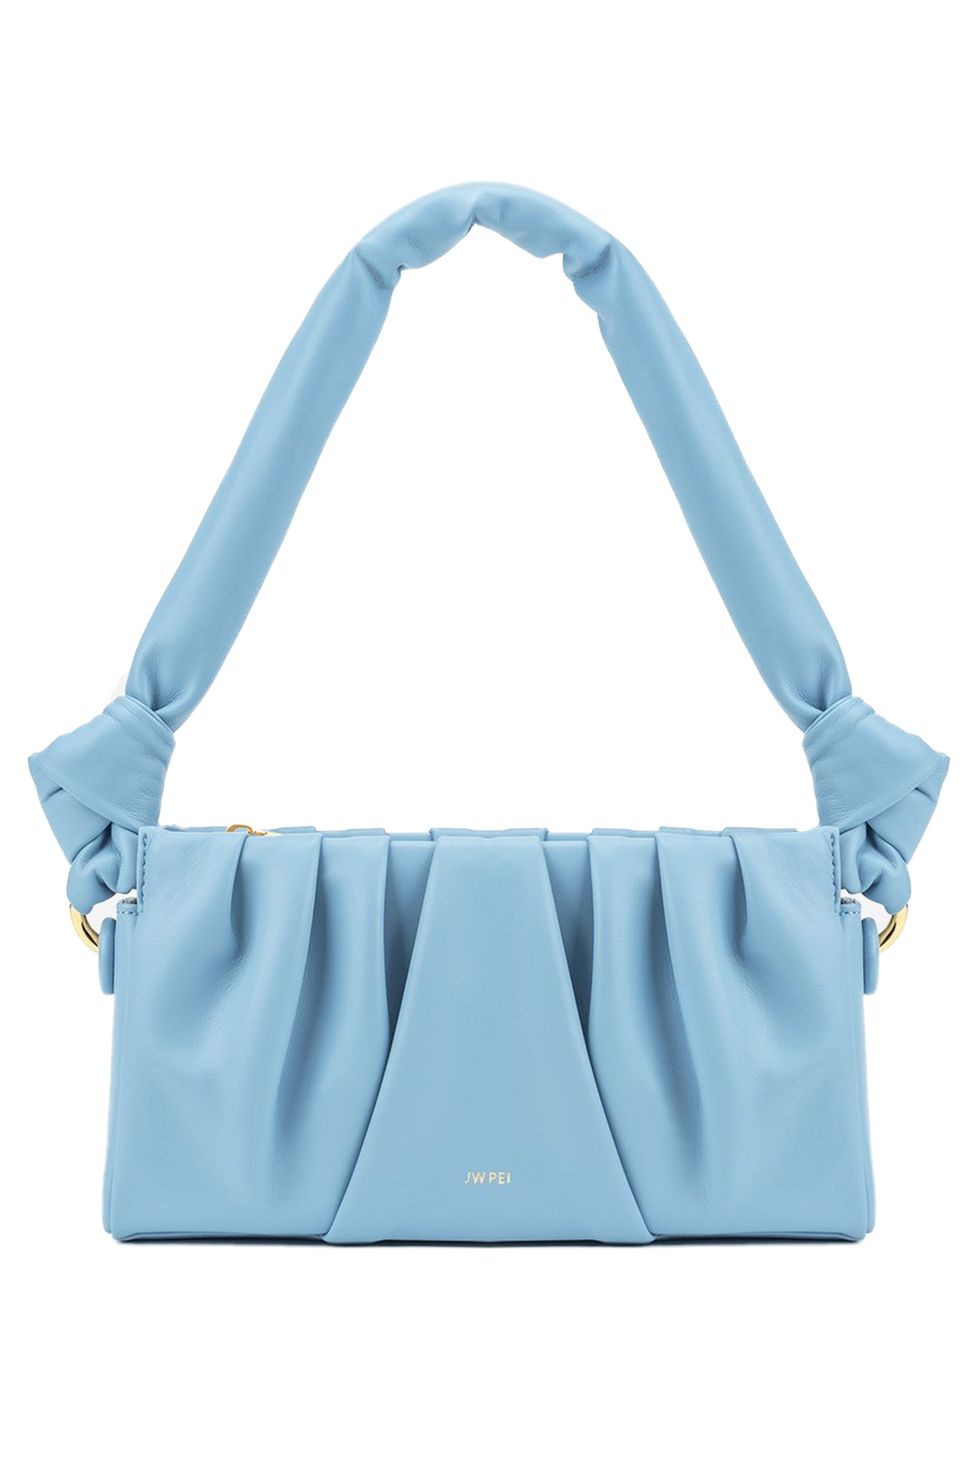 New Designer Handbags Famous Brands Women Designer Branded Bags